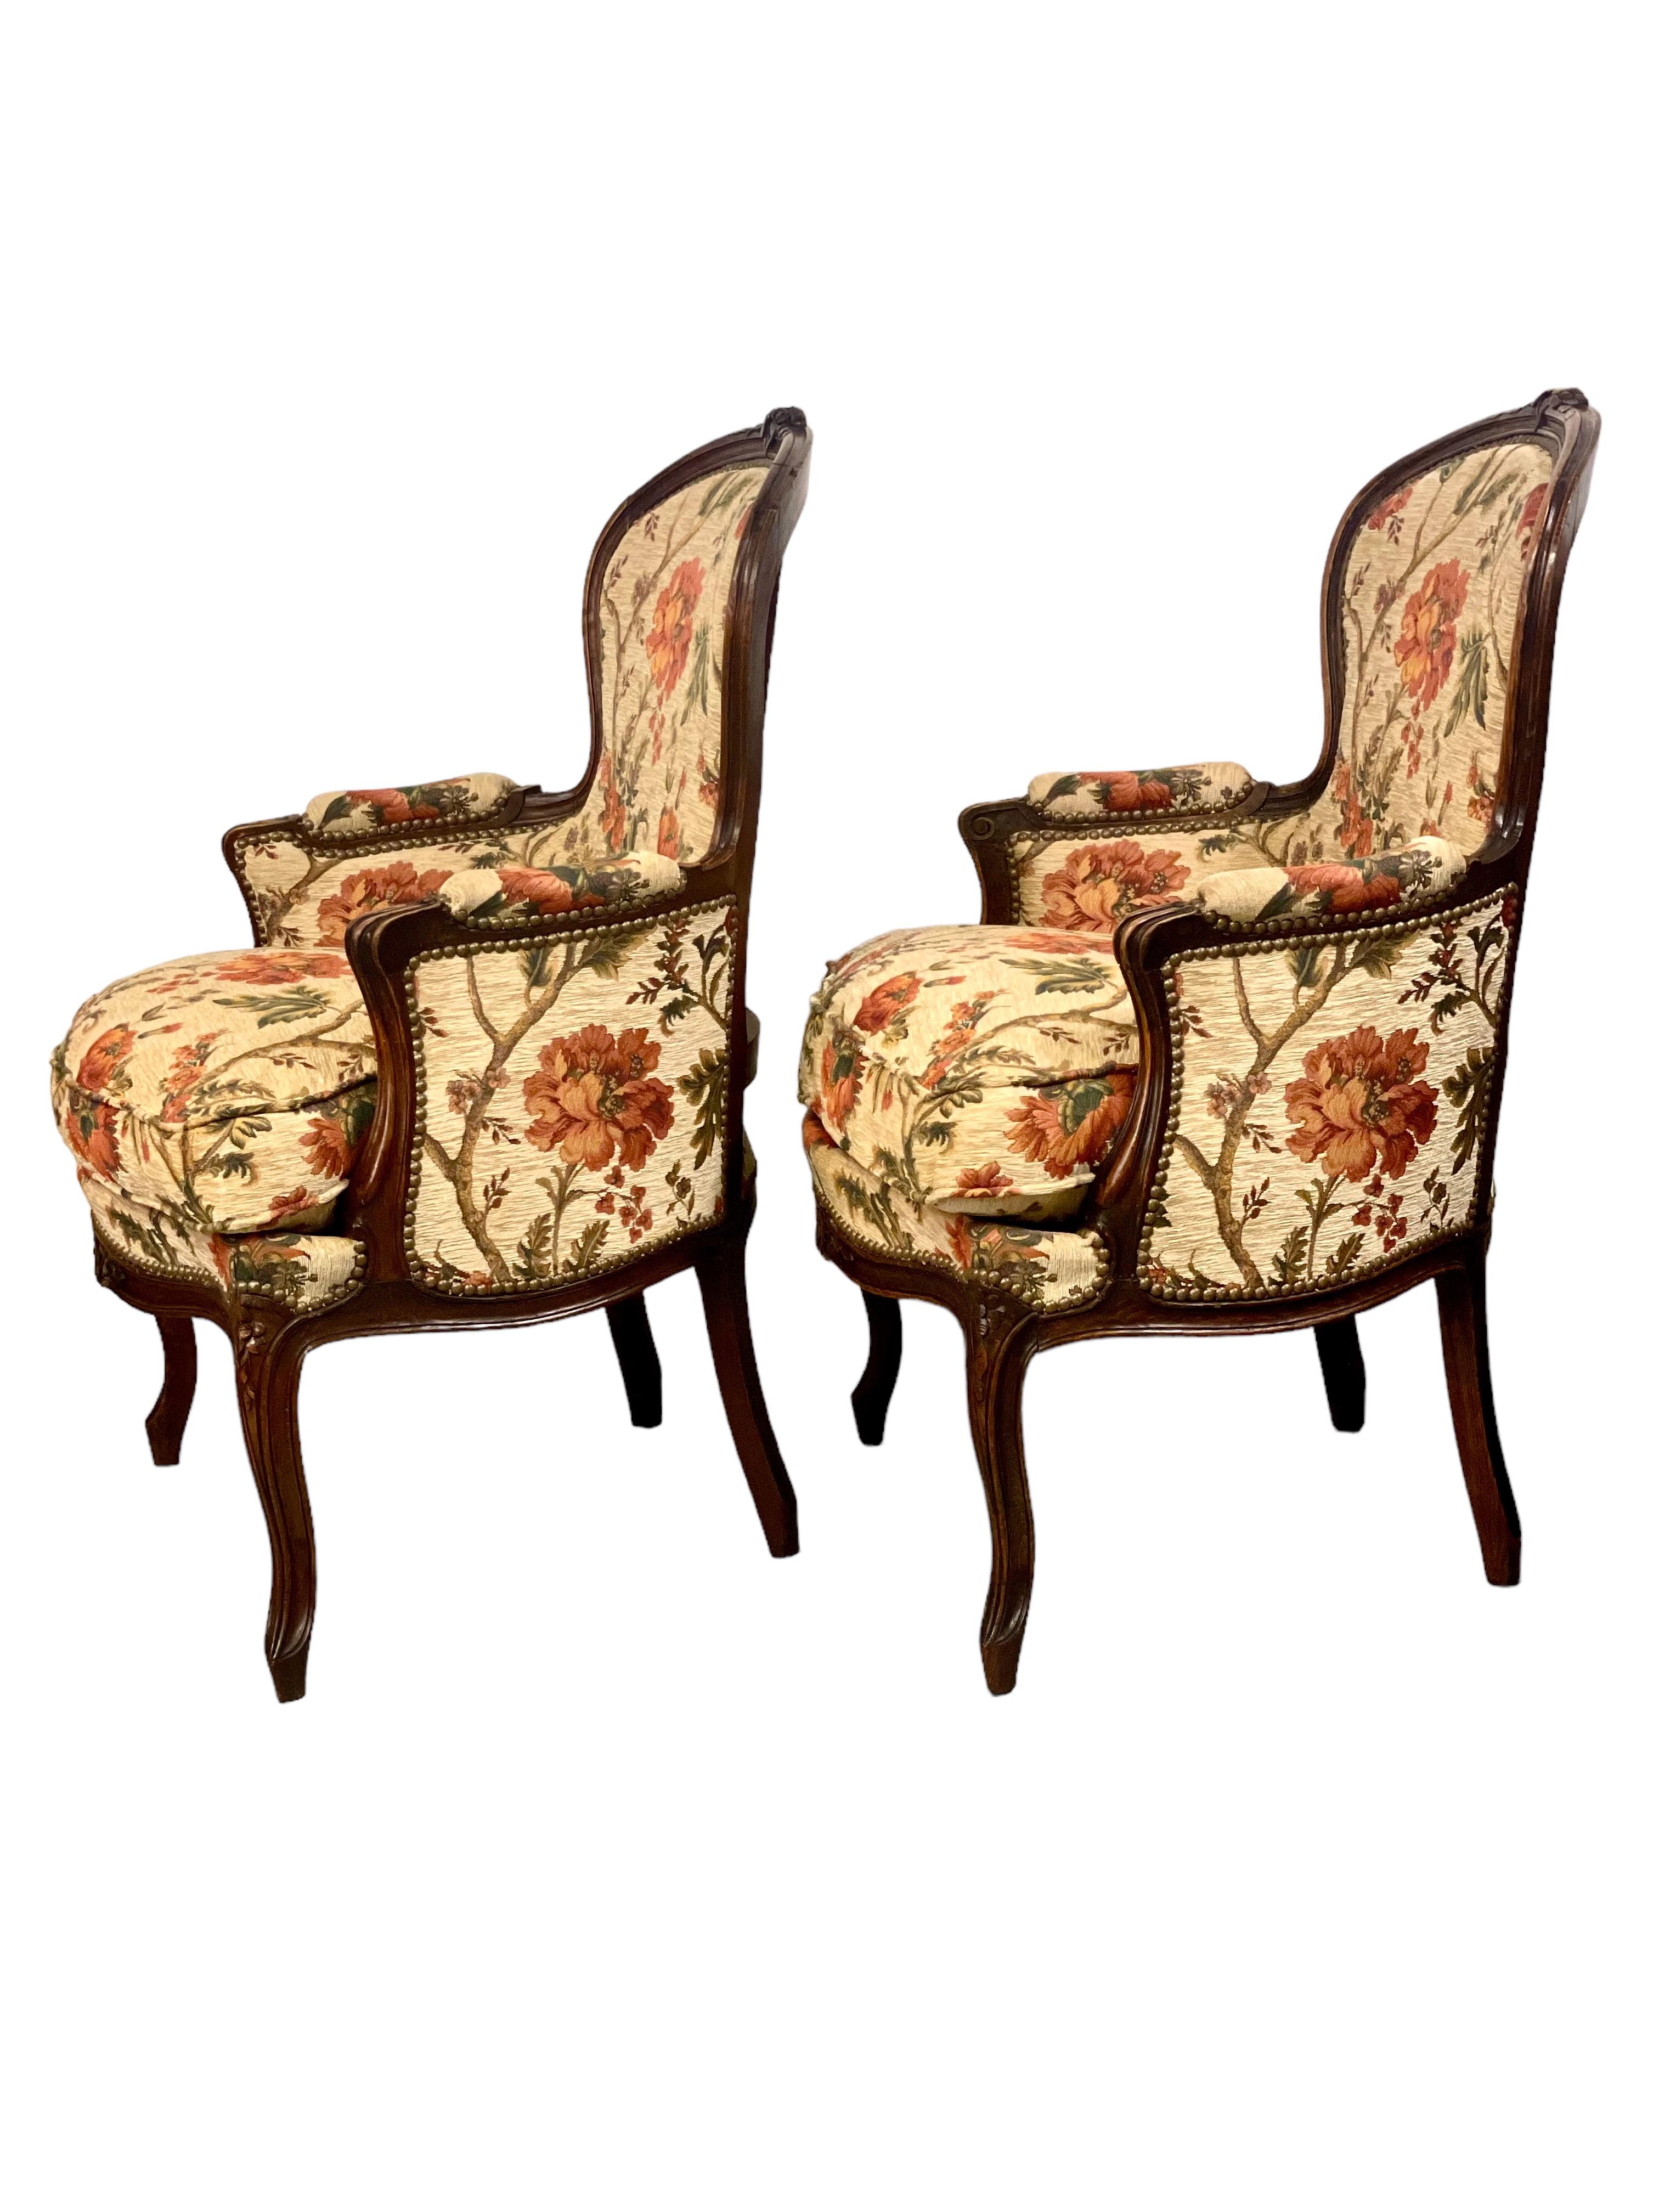 Ein Paar elegante und äußerst bequeme Sessel im Stil von Louis XV, gepolstert mit einem luxuriösen gewebten Blumenstoff in warmen Apricot-, Terrakotta- und Grüntönen auf cremefarbenem Hintergrund. 
Die geschwungenen Holzrahmen sind wunderschön glatt